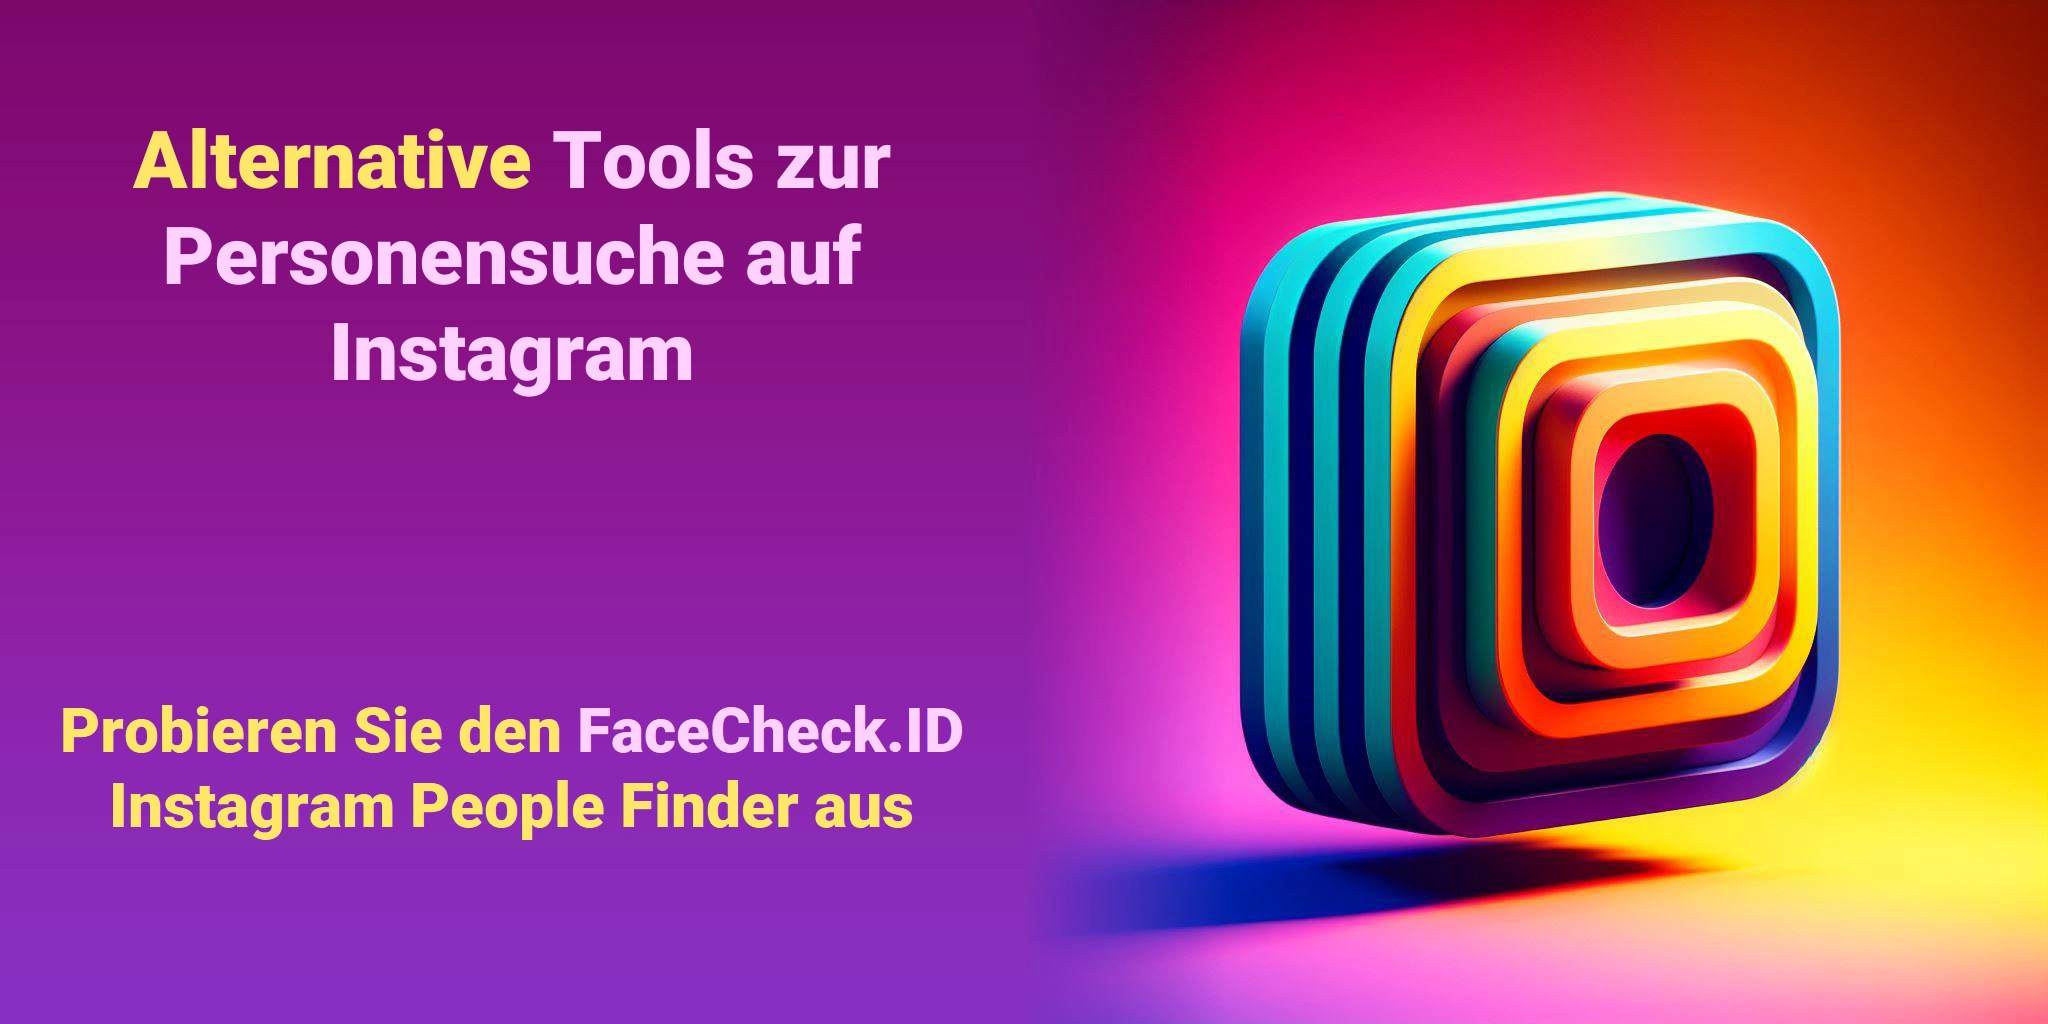 Alternative Tools zur Personensuche auf Instagram Probieren Sie den FaceCheck.ID Instagram People Finder aus